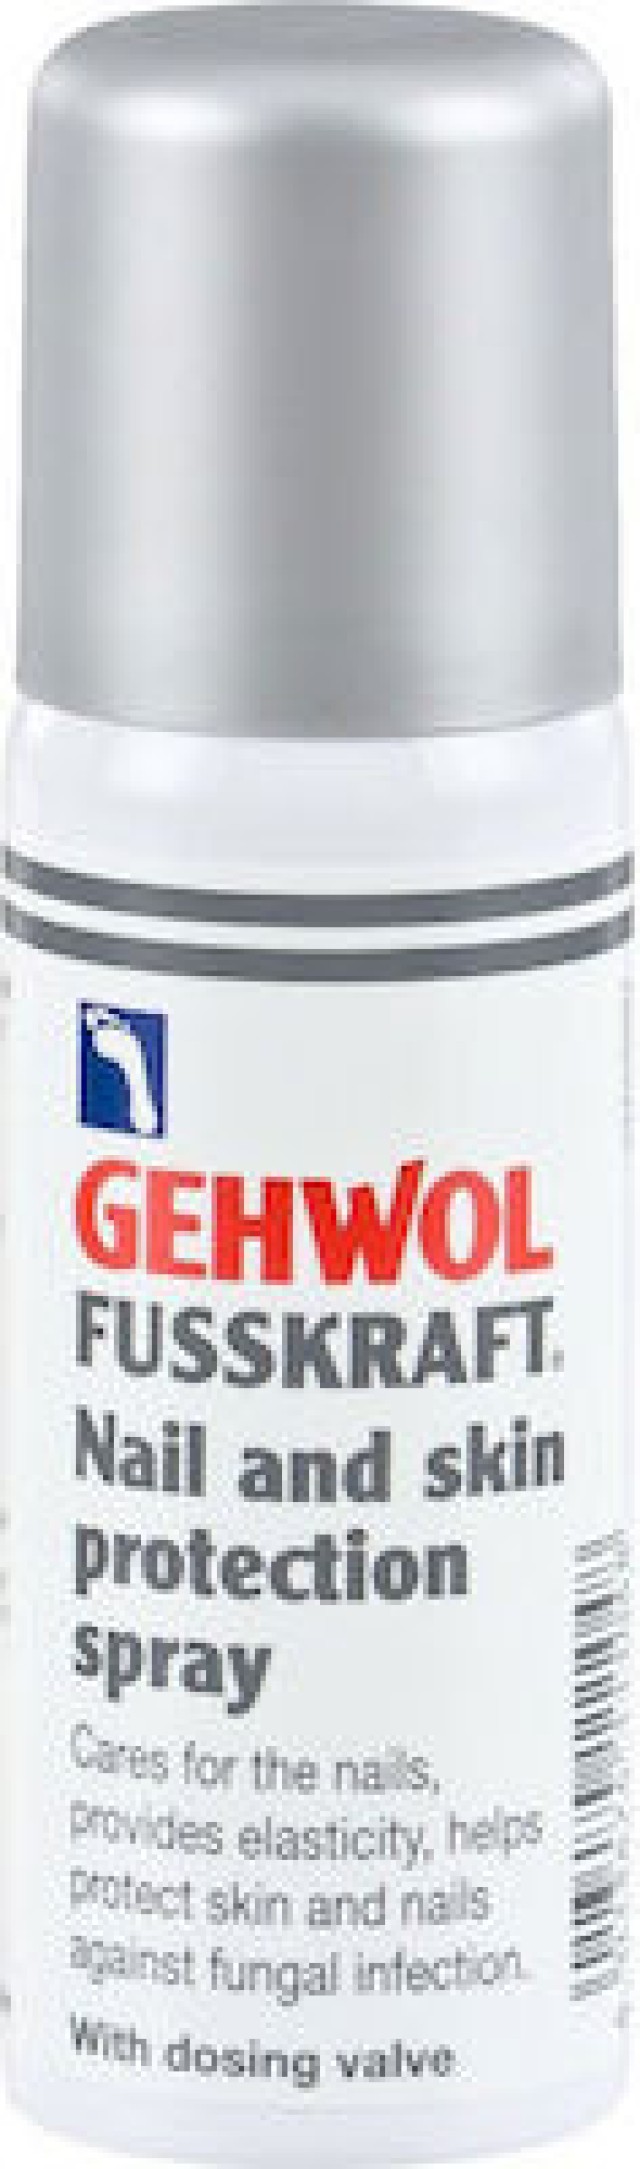 GΕHWOL Fusskraft Nail - Skin Protection Spray, 50ml